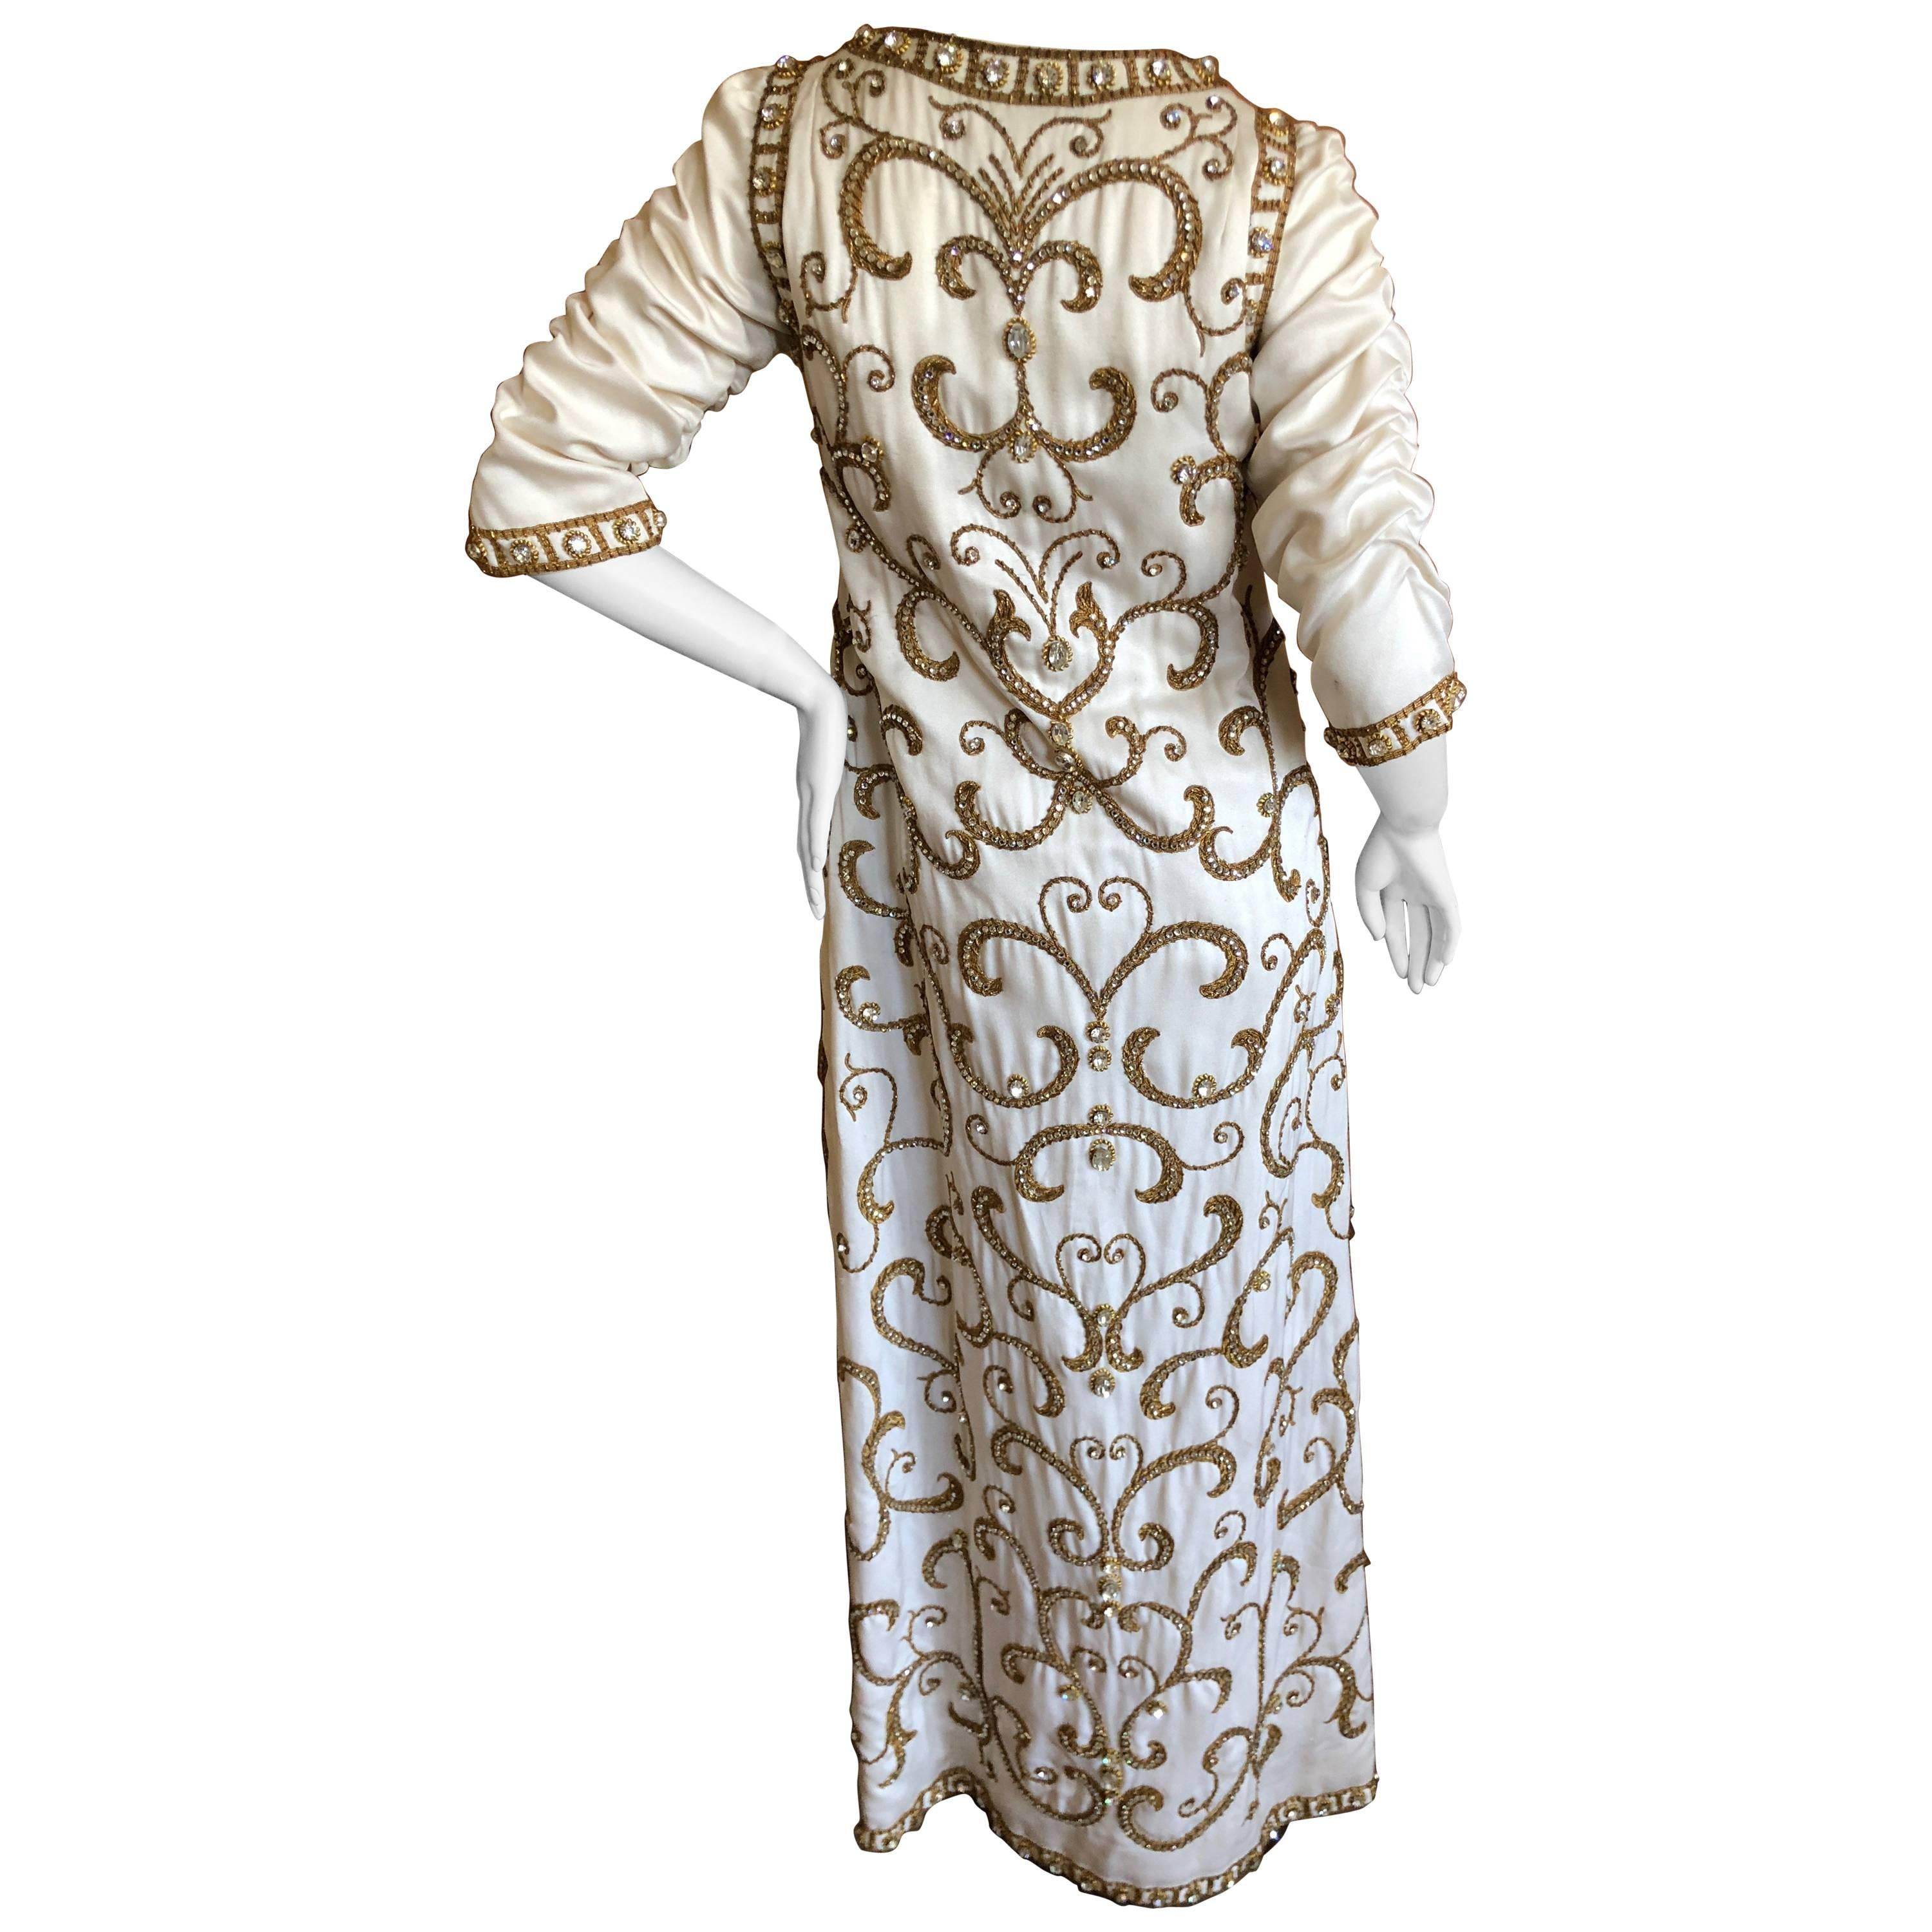 Cardinali Arabesque Crystal Embellished Evening Coat Dress 1970  For Sale